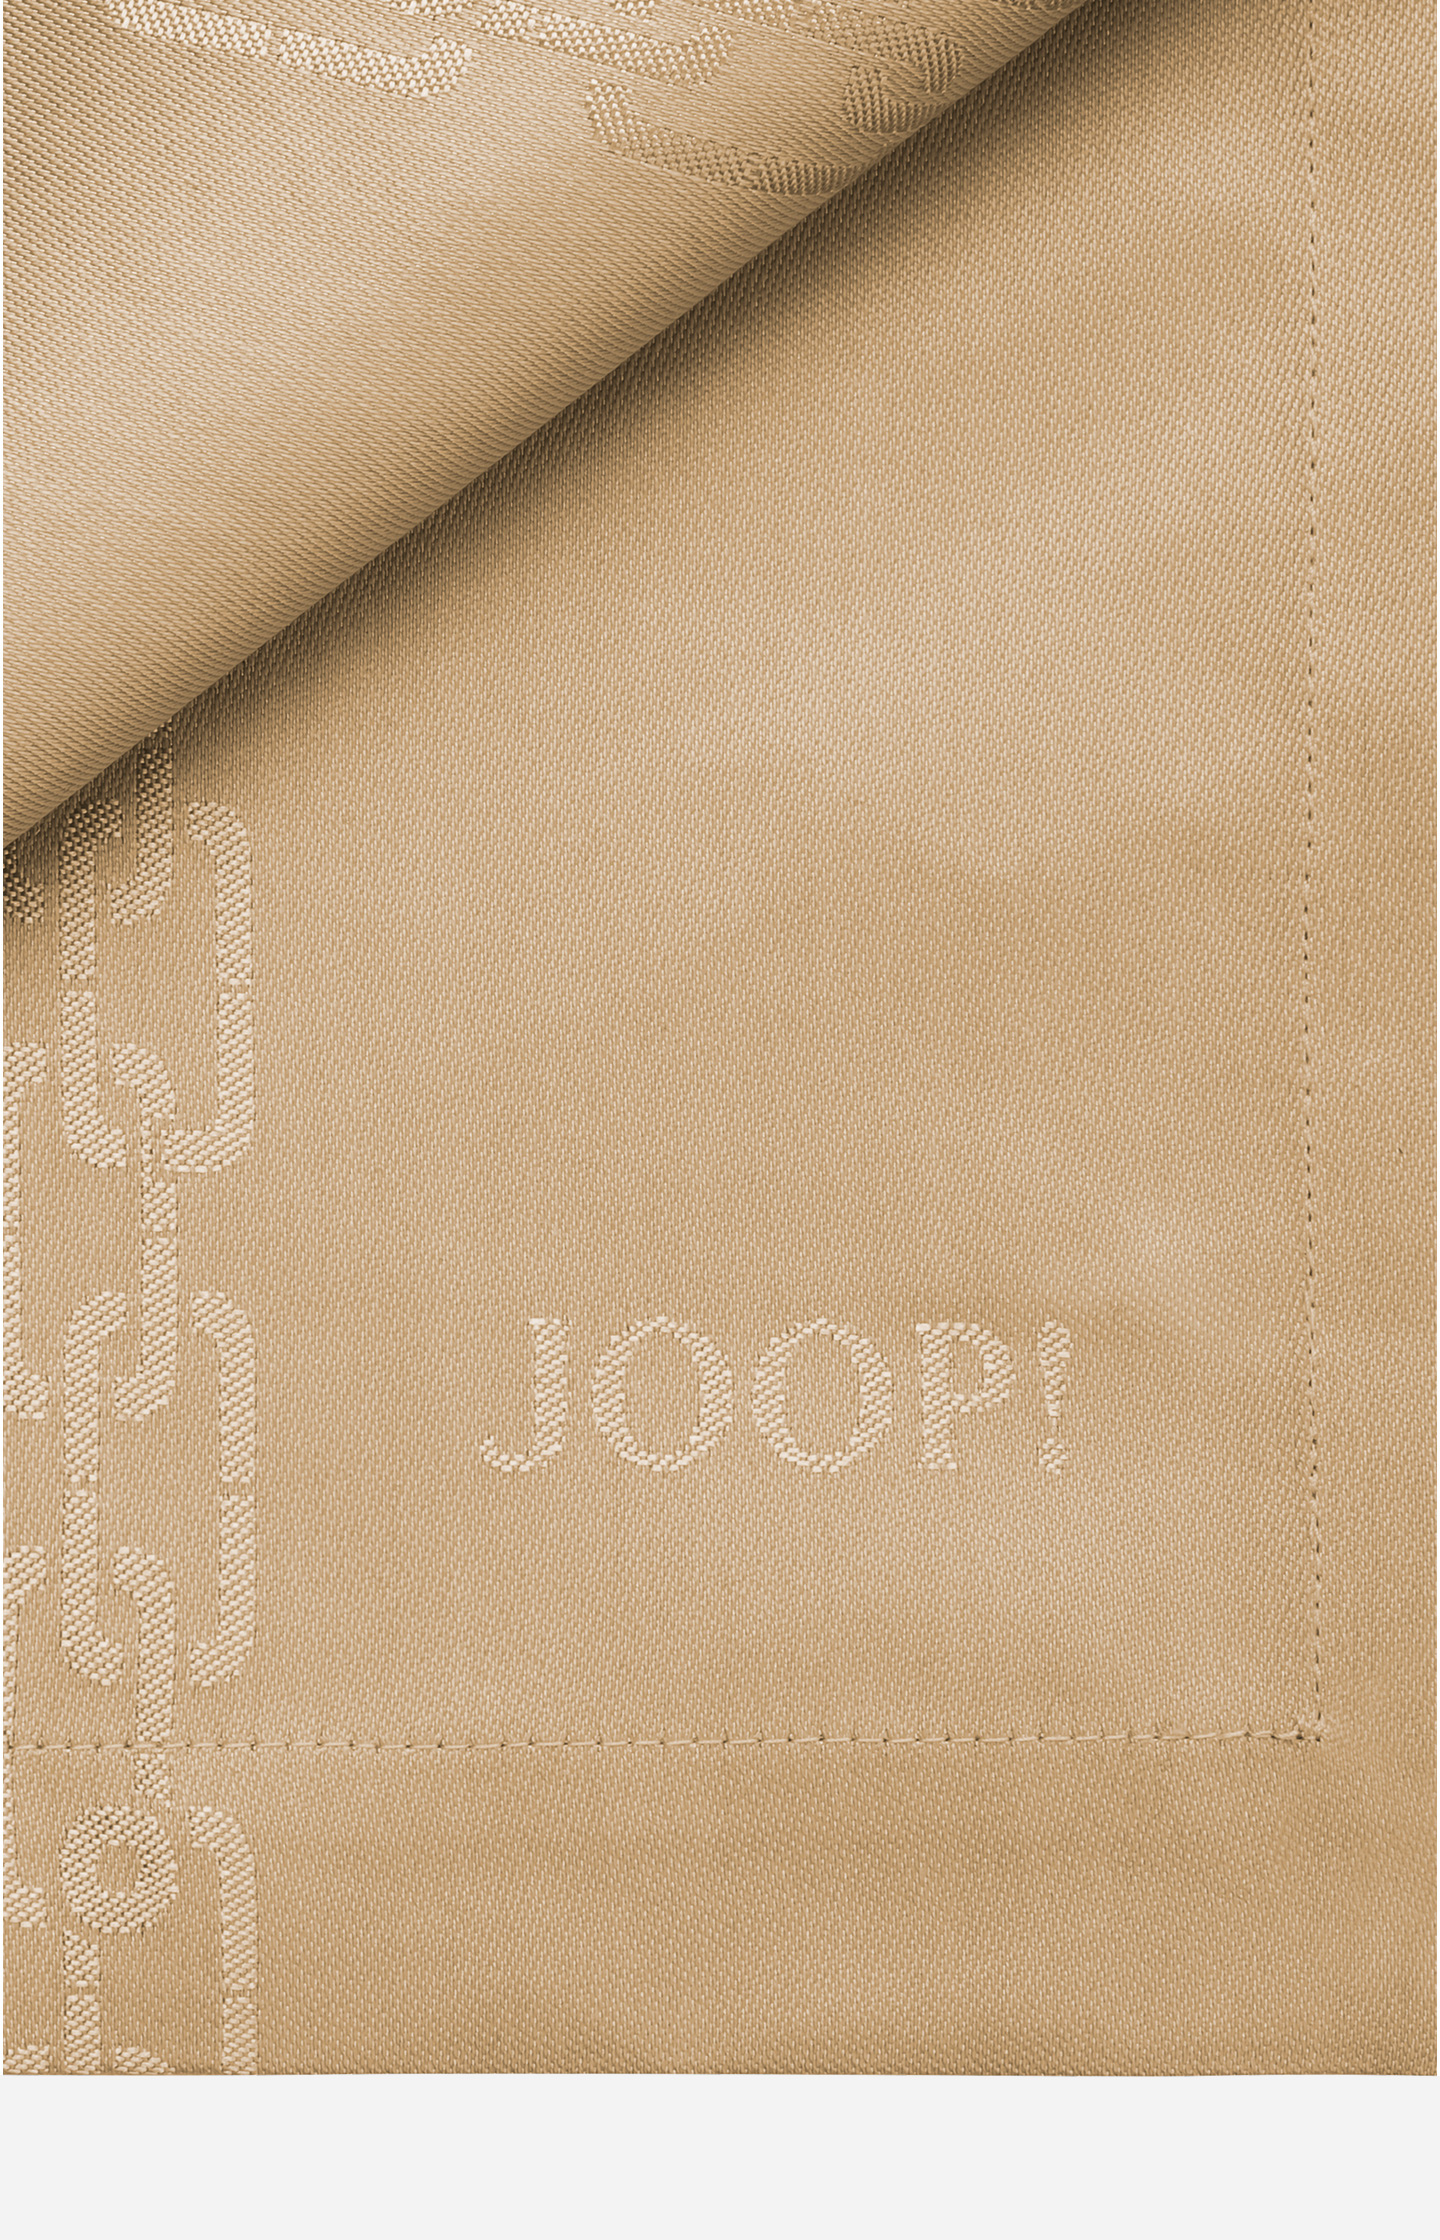 JOOP! CHAINS placemats in garnet - set of 2, 36 x 48 cm - in the JOOP!  Online Shop